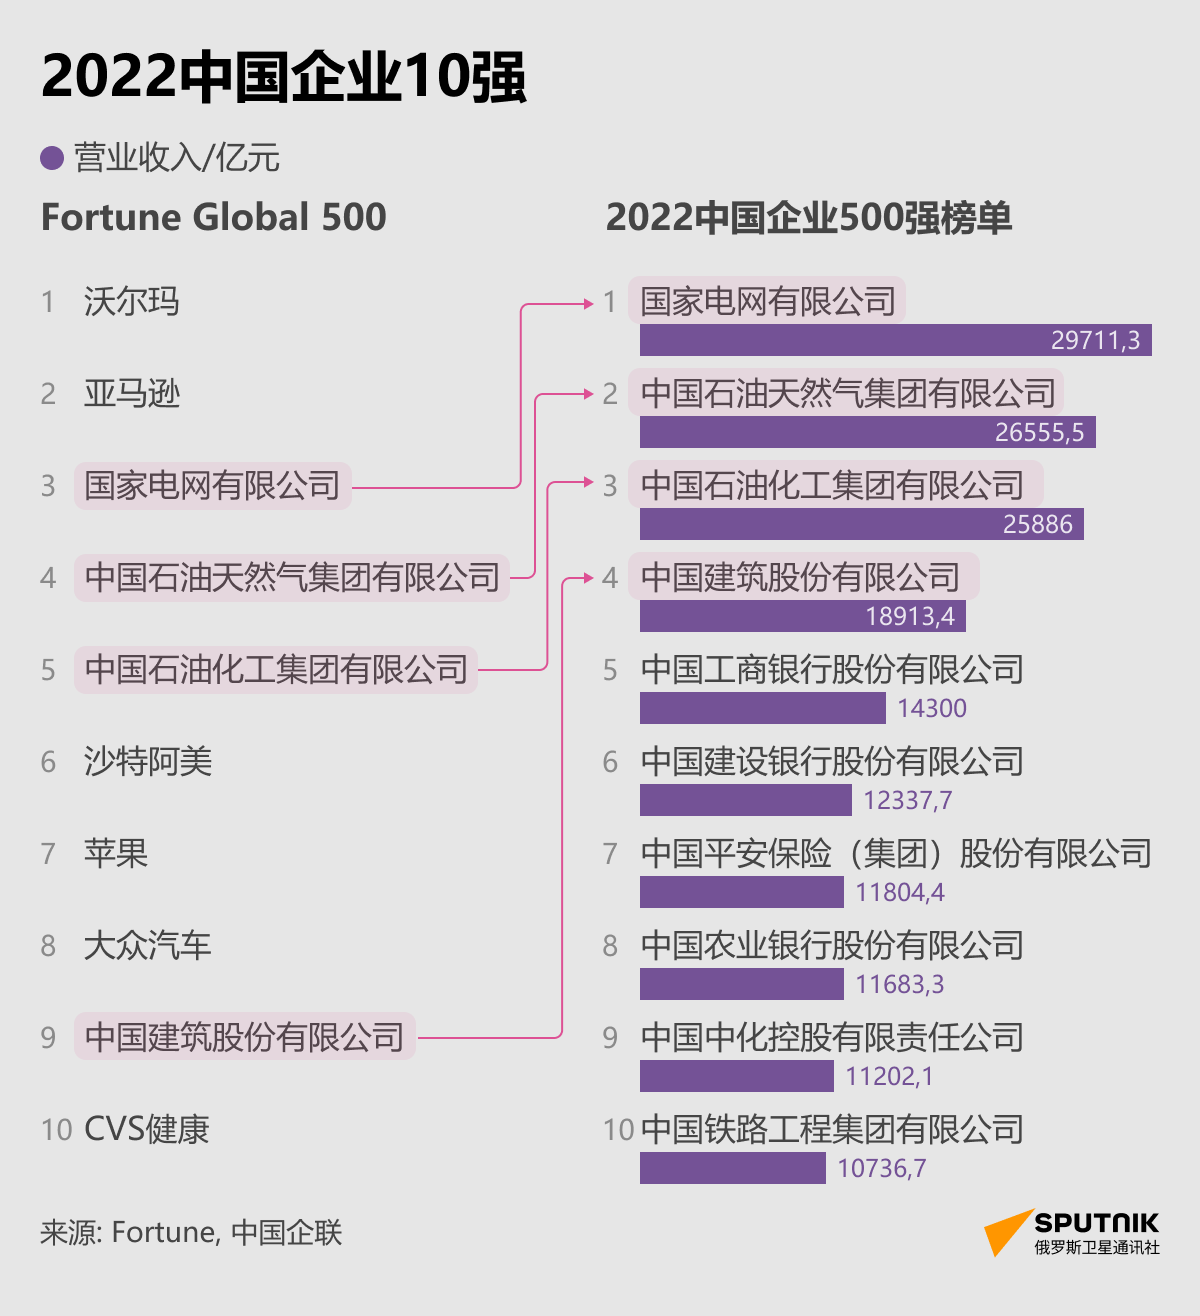 2022中国企业10强 - 俄罗斯卫星通讯社